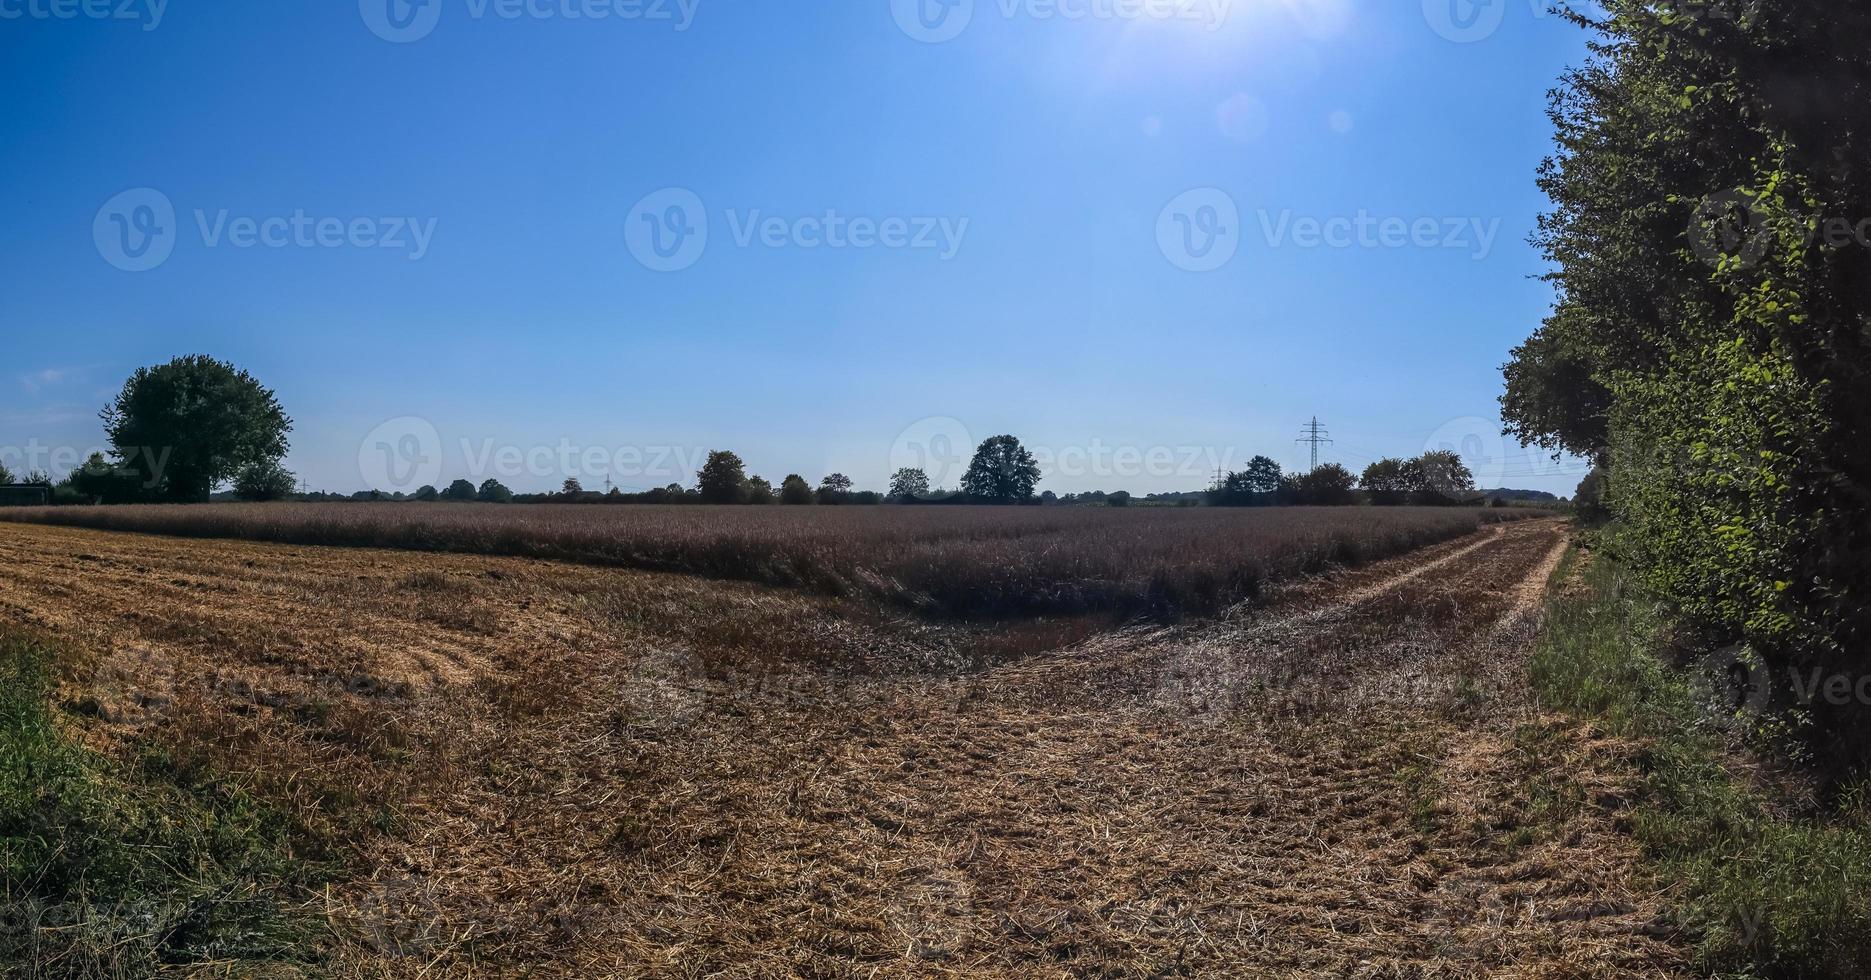 prachtig panorama met hoge resolutie van een Noord-Europees landlandschap met velden en groen gras foto